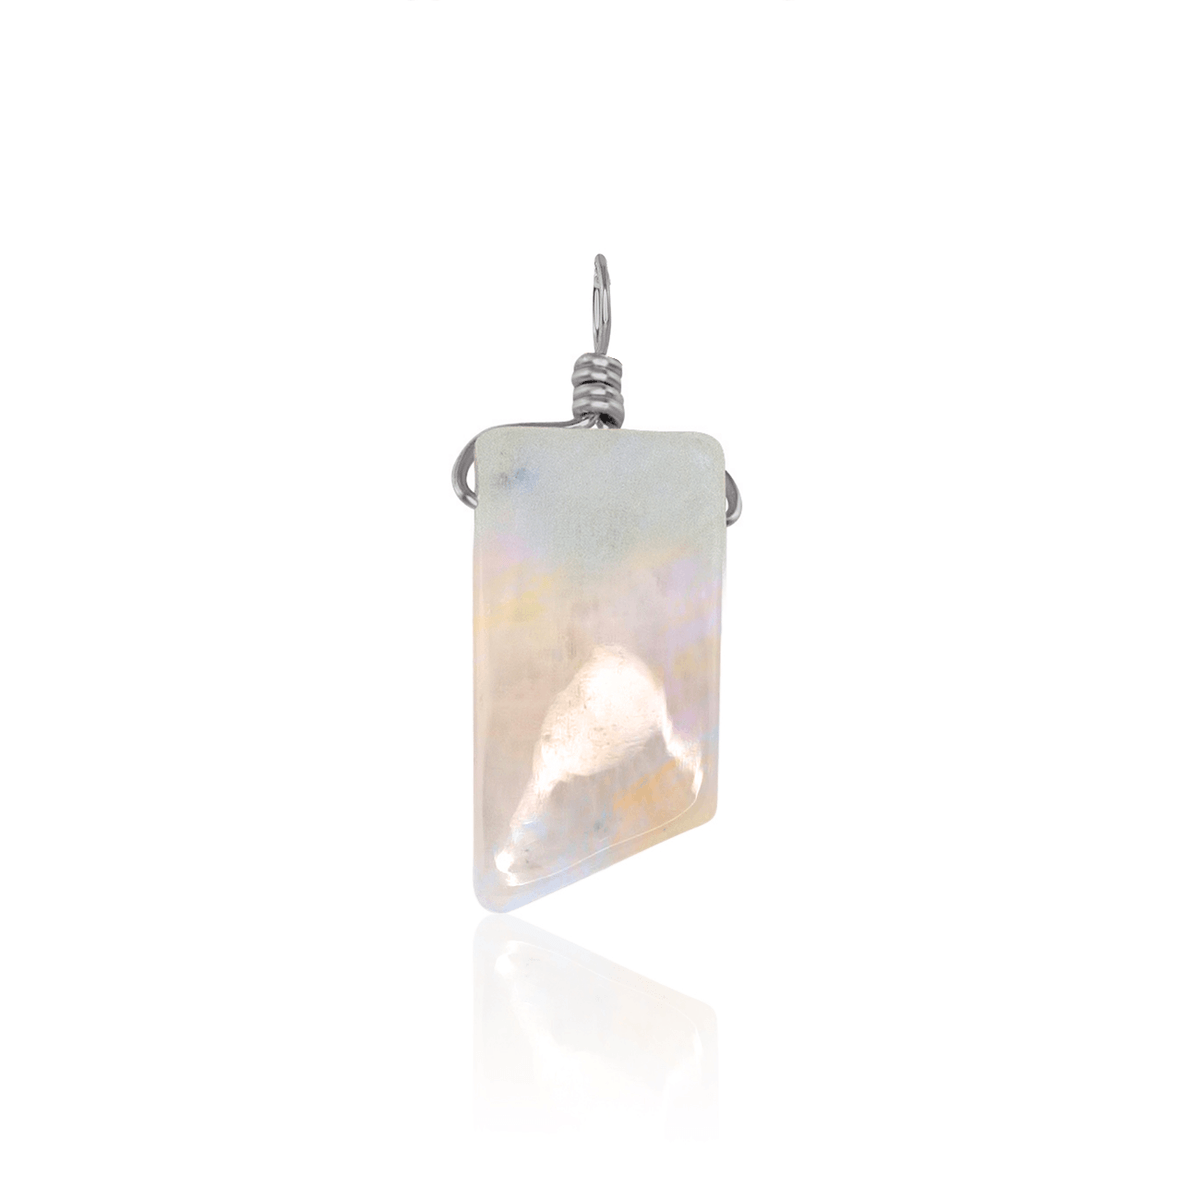 Small Smooth Rainbow Moonstone Crystal Pendant with Gentle Point - Small Smooth Rainbow Moonstone Crystal Pendant with Gentle Point - Stainless Steel - Luna Tide Handmade Crystal Jewellery